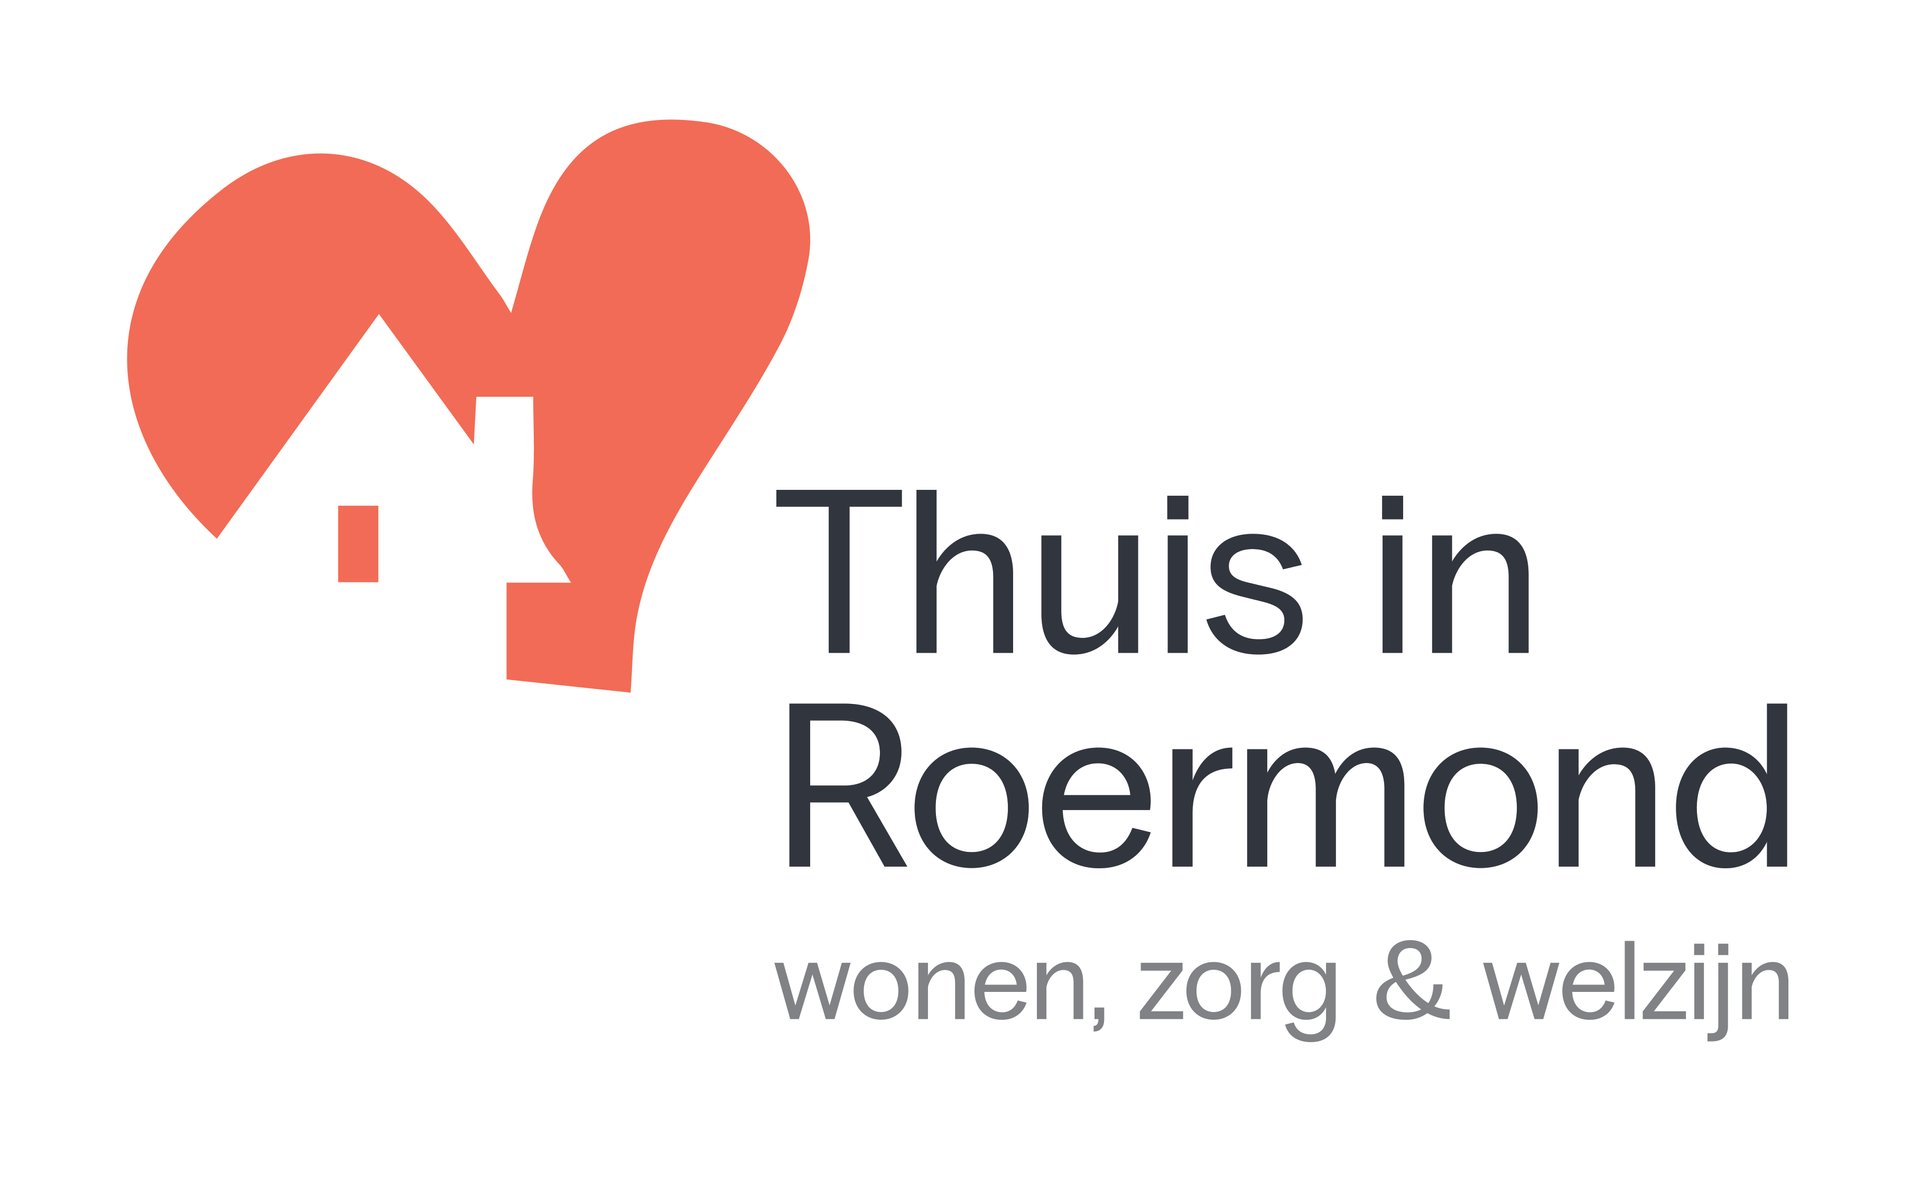 Het logo van thuis in Roermond